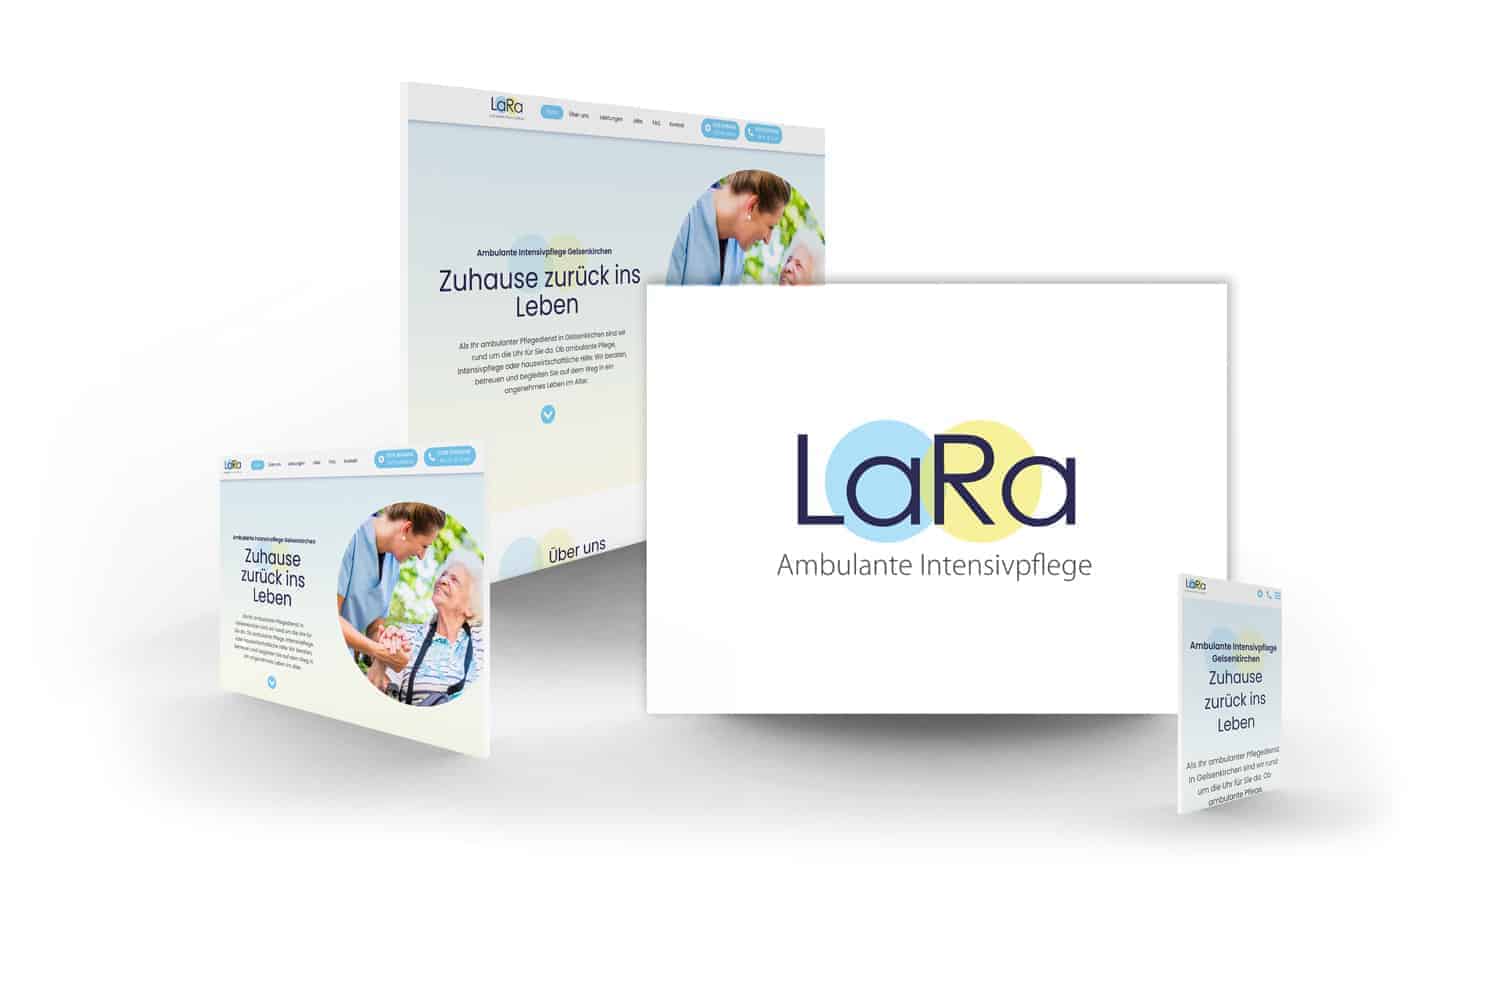 crocovision Webdesign Referenz LaRa Pflegedienst GmbH